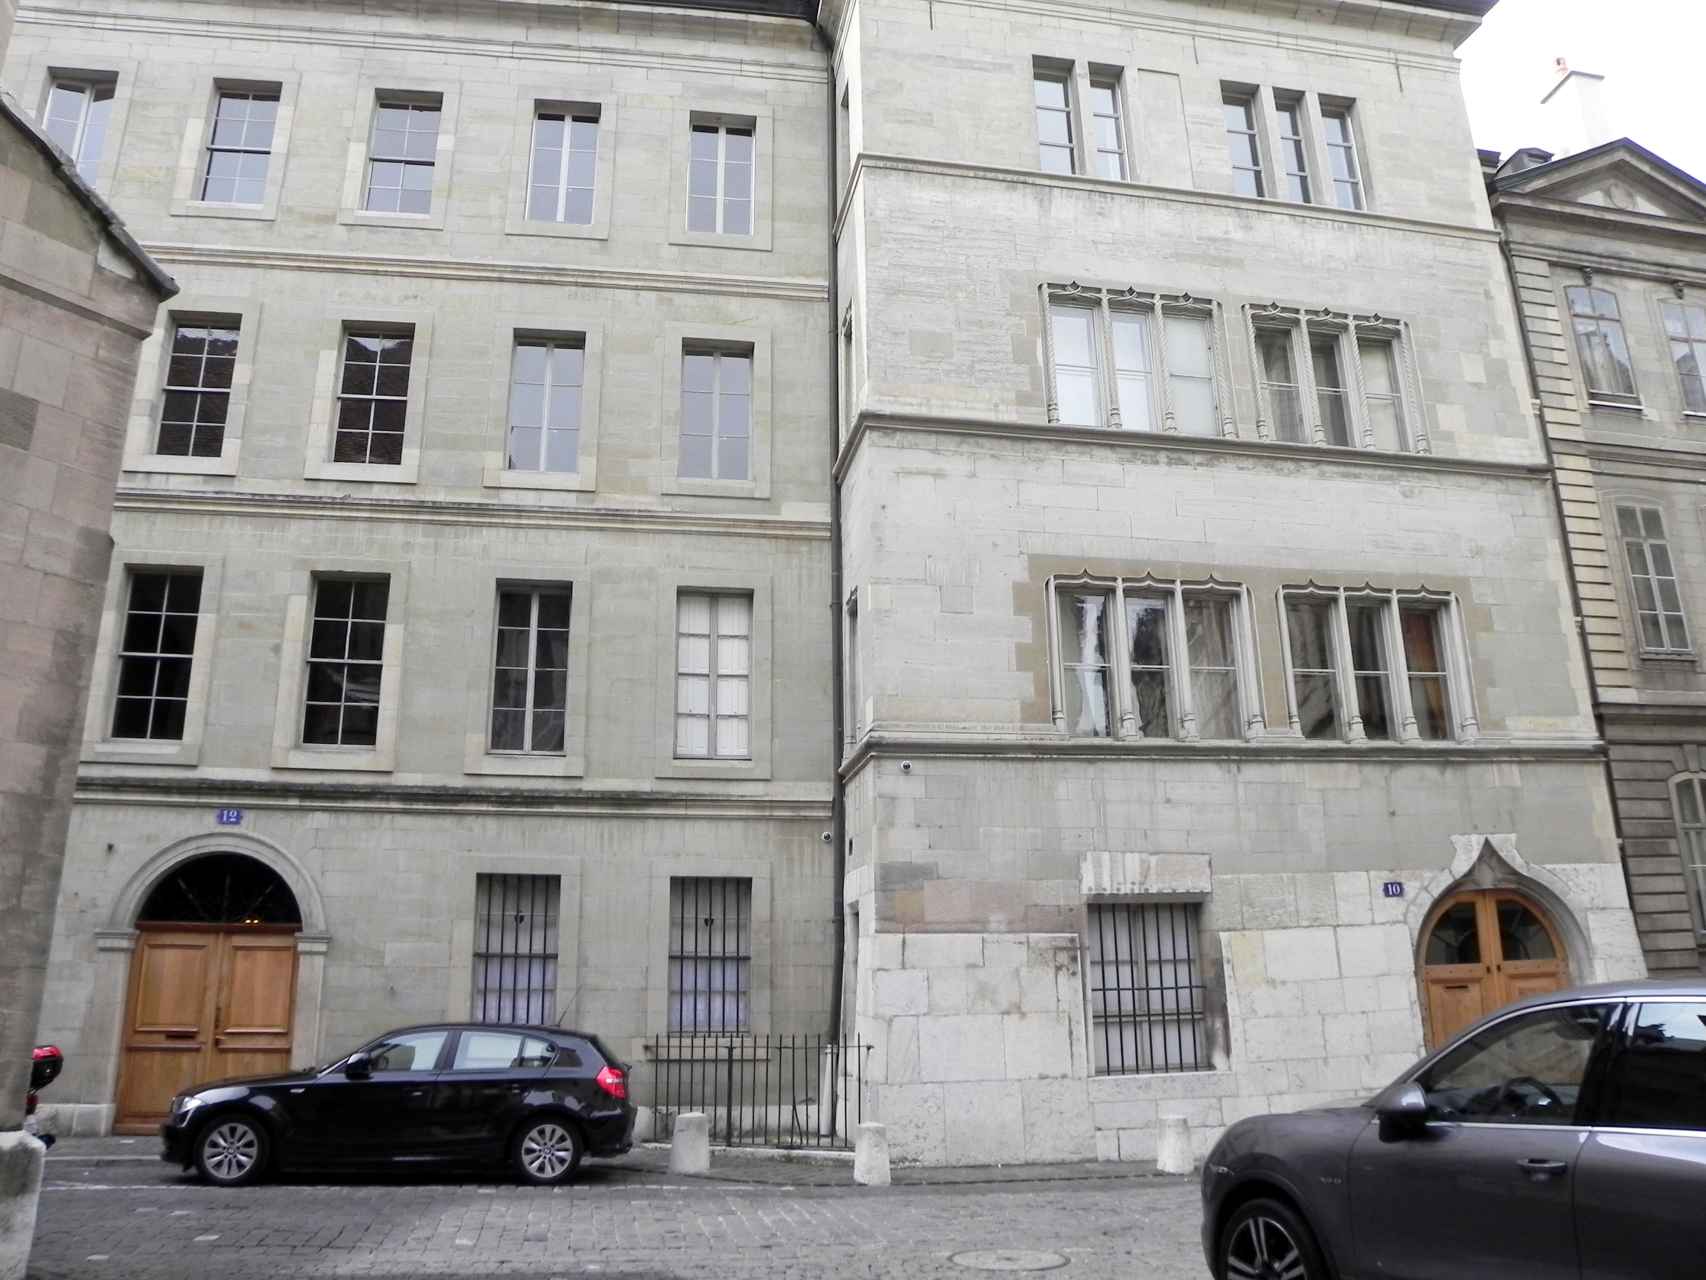 Edificio donde vive la Infanta Cristina en Ginebra